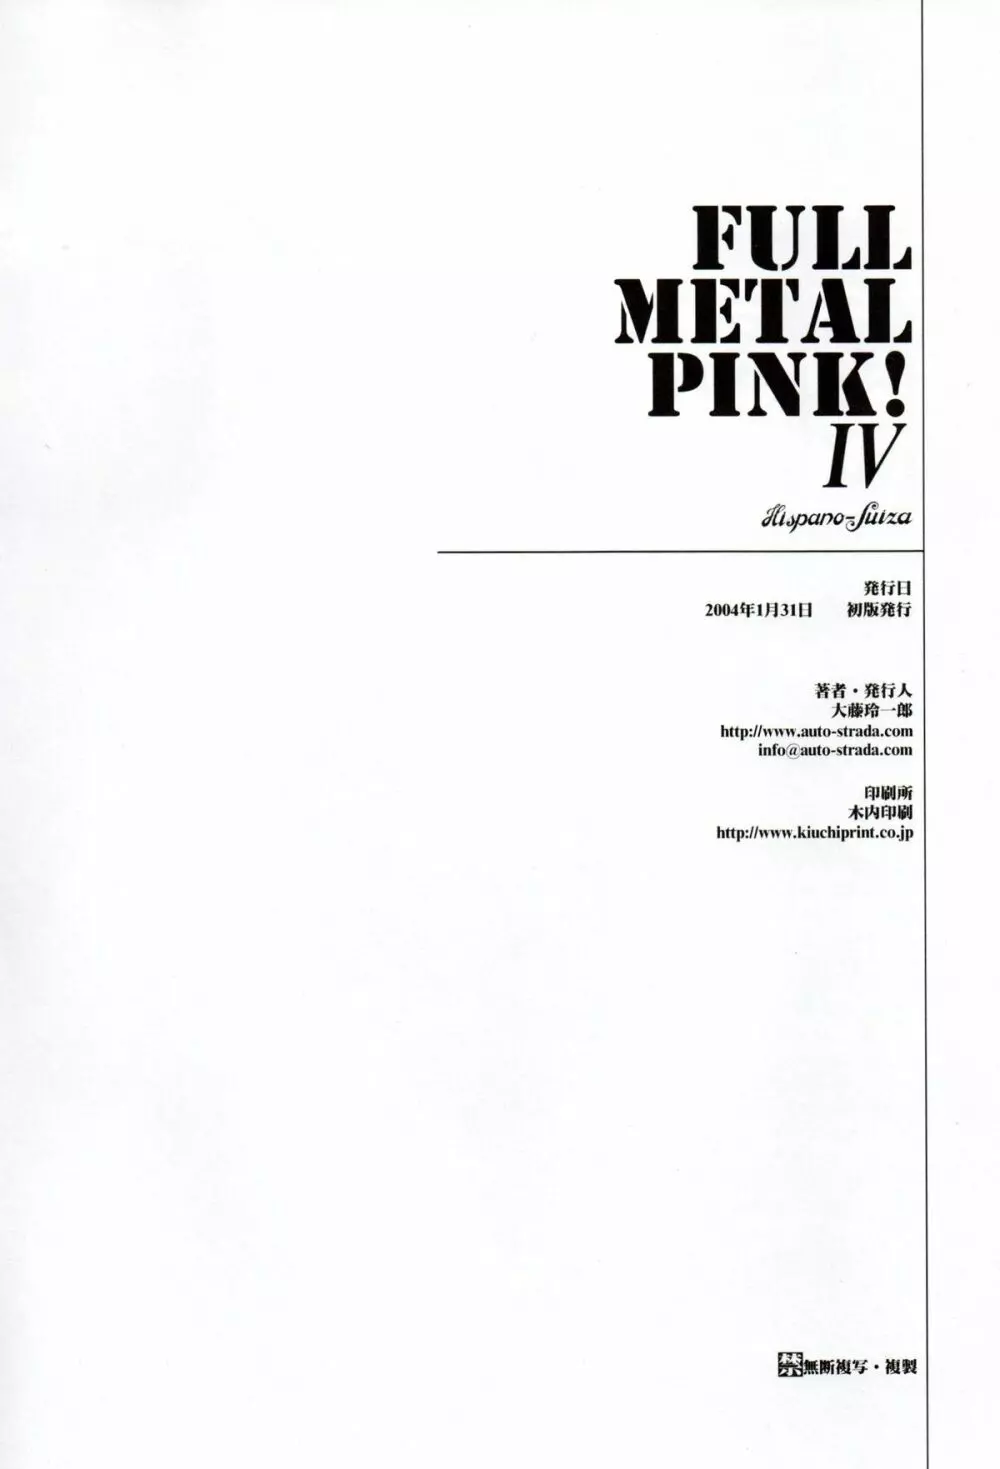 FULL METAL PINK! IV 49ページ